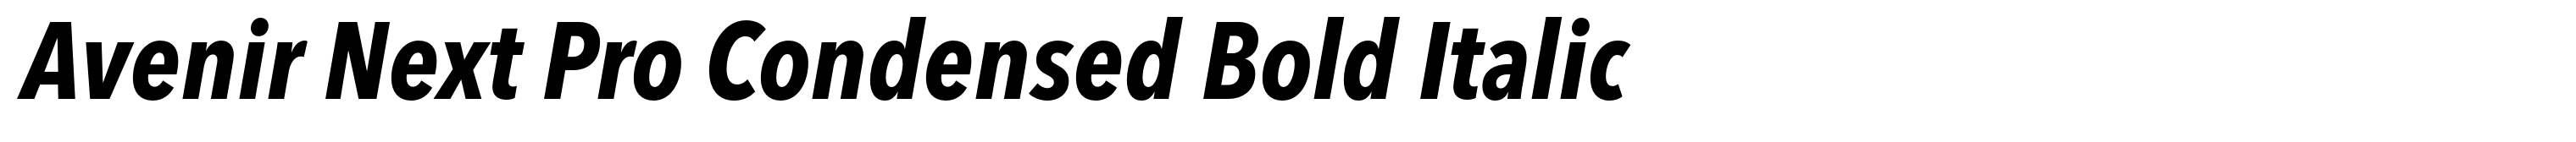 Avenir Next Pro Condensed Bold Italic